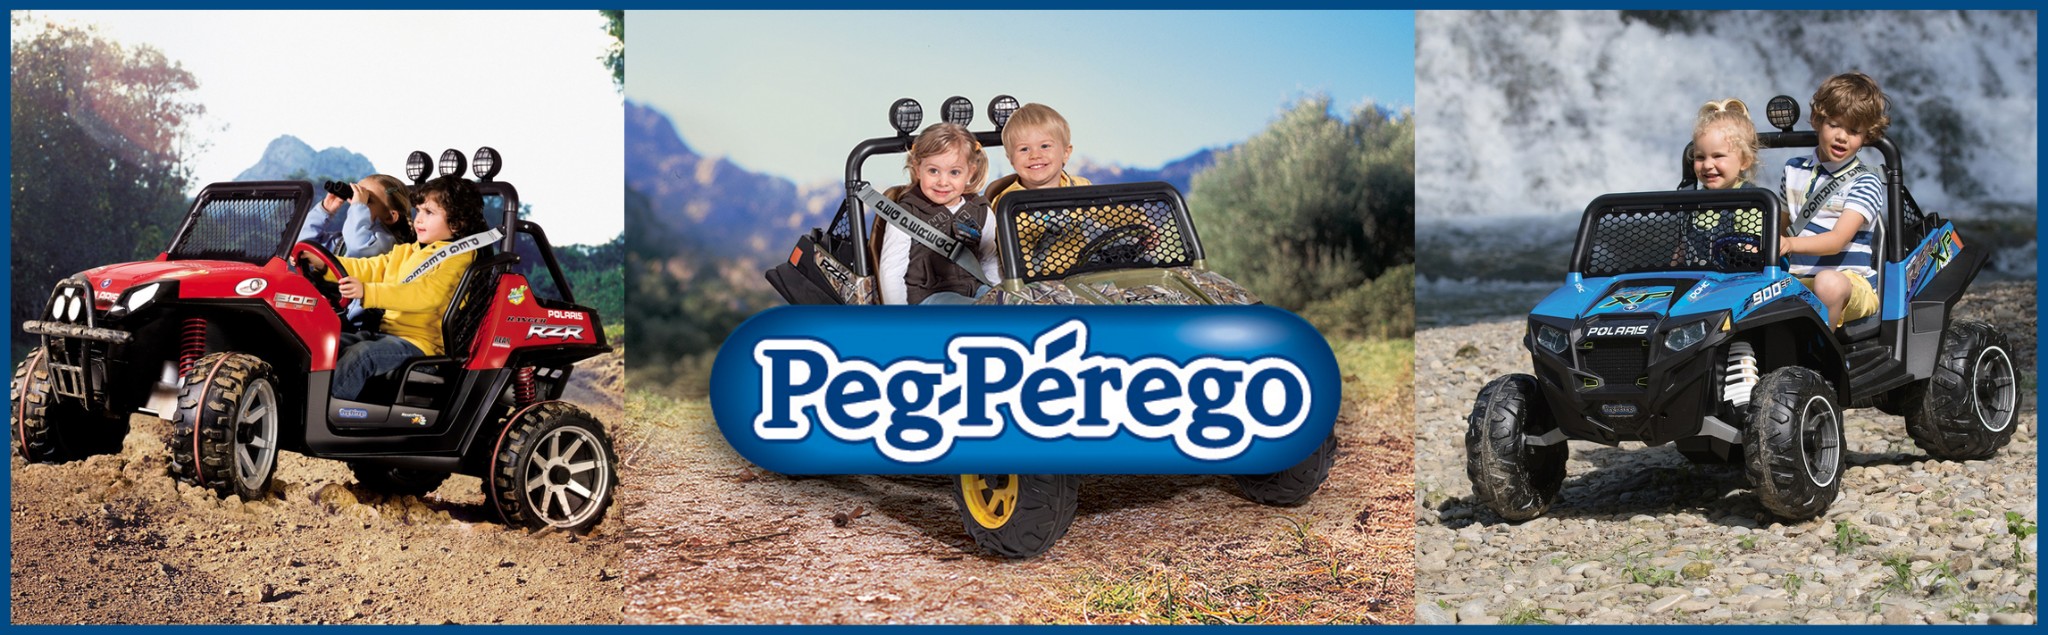 פג-פיריגו איטליה - Peg-Perego - סינדיה